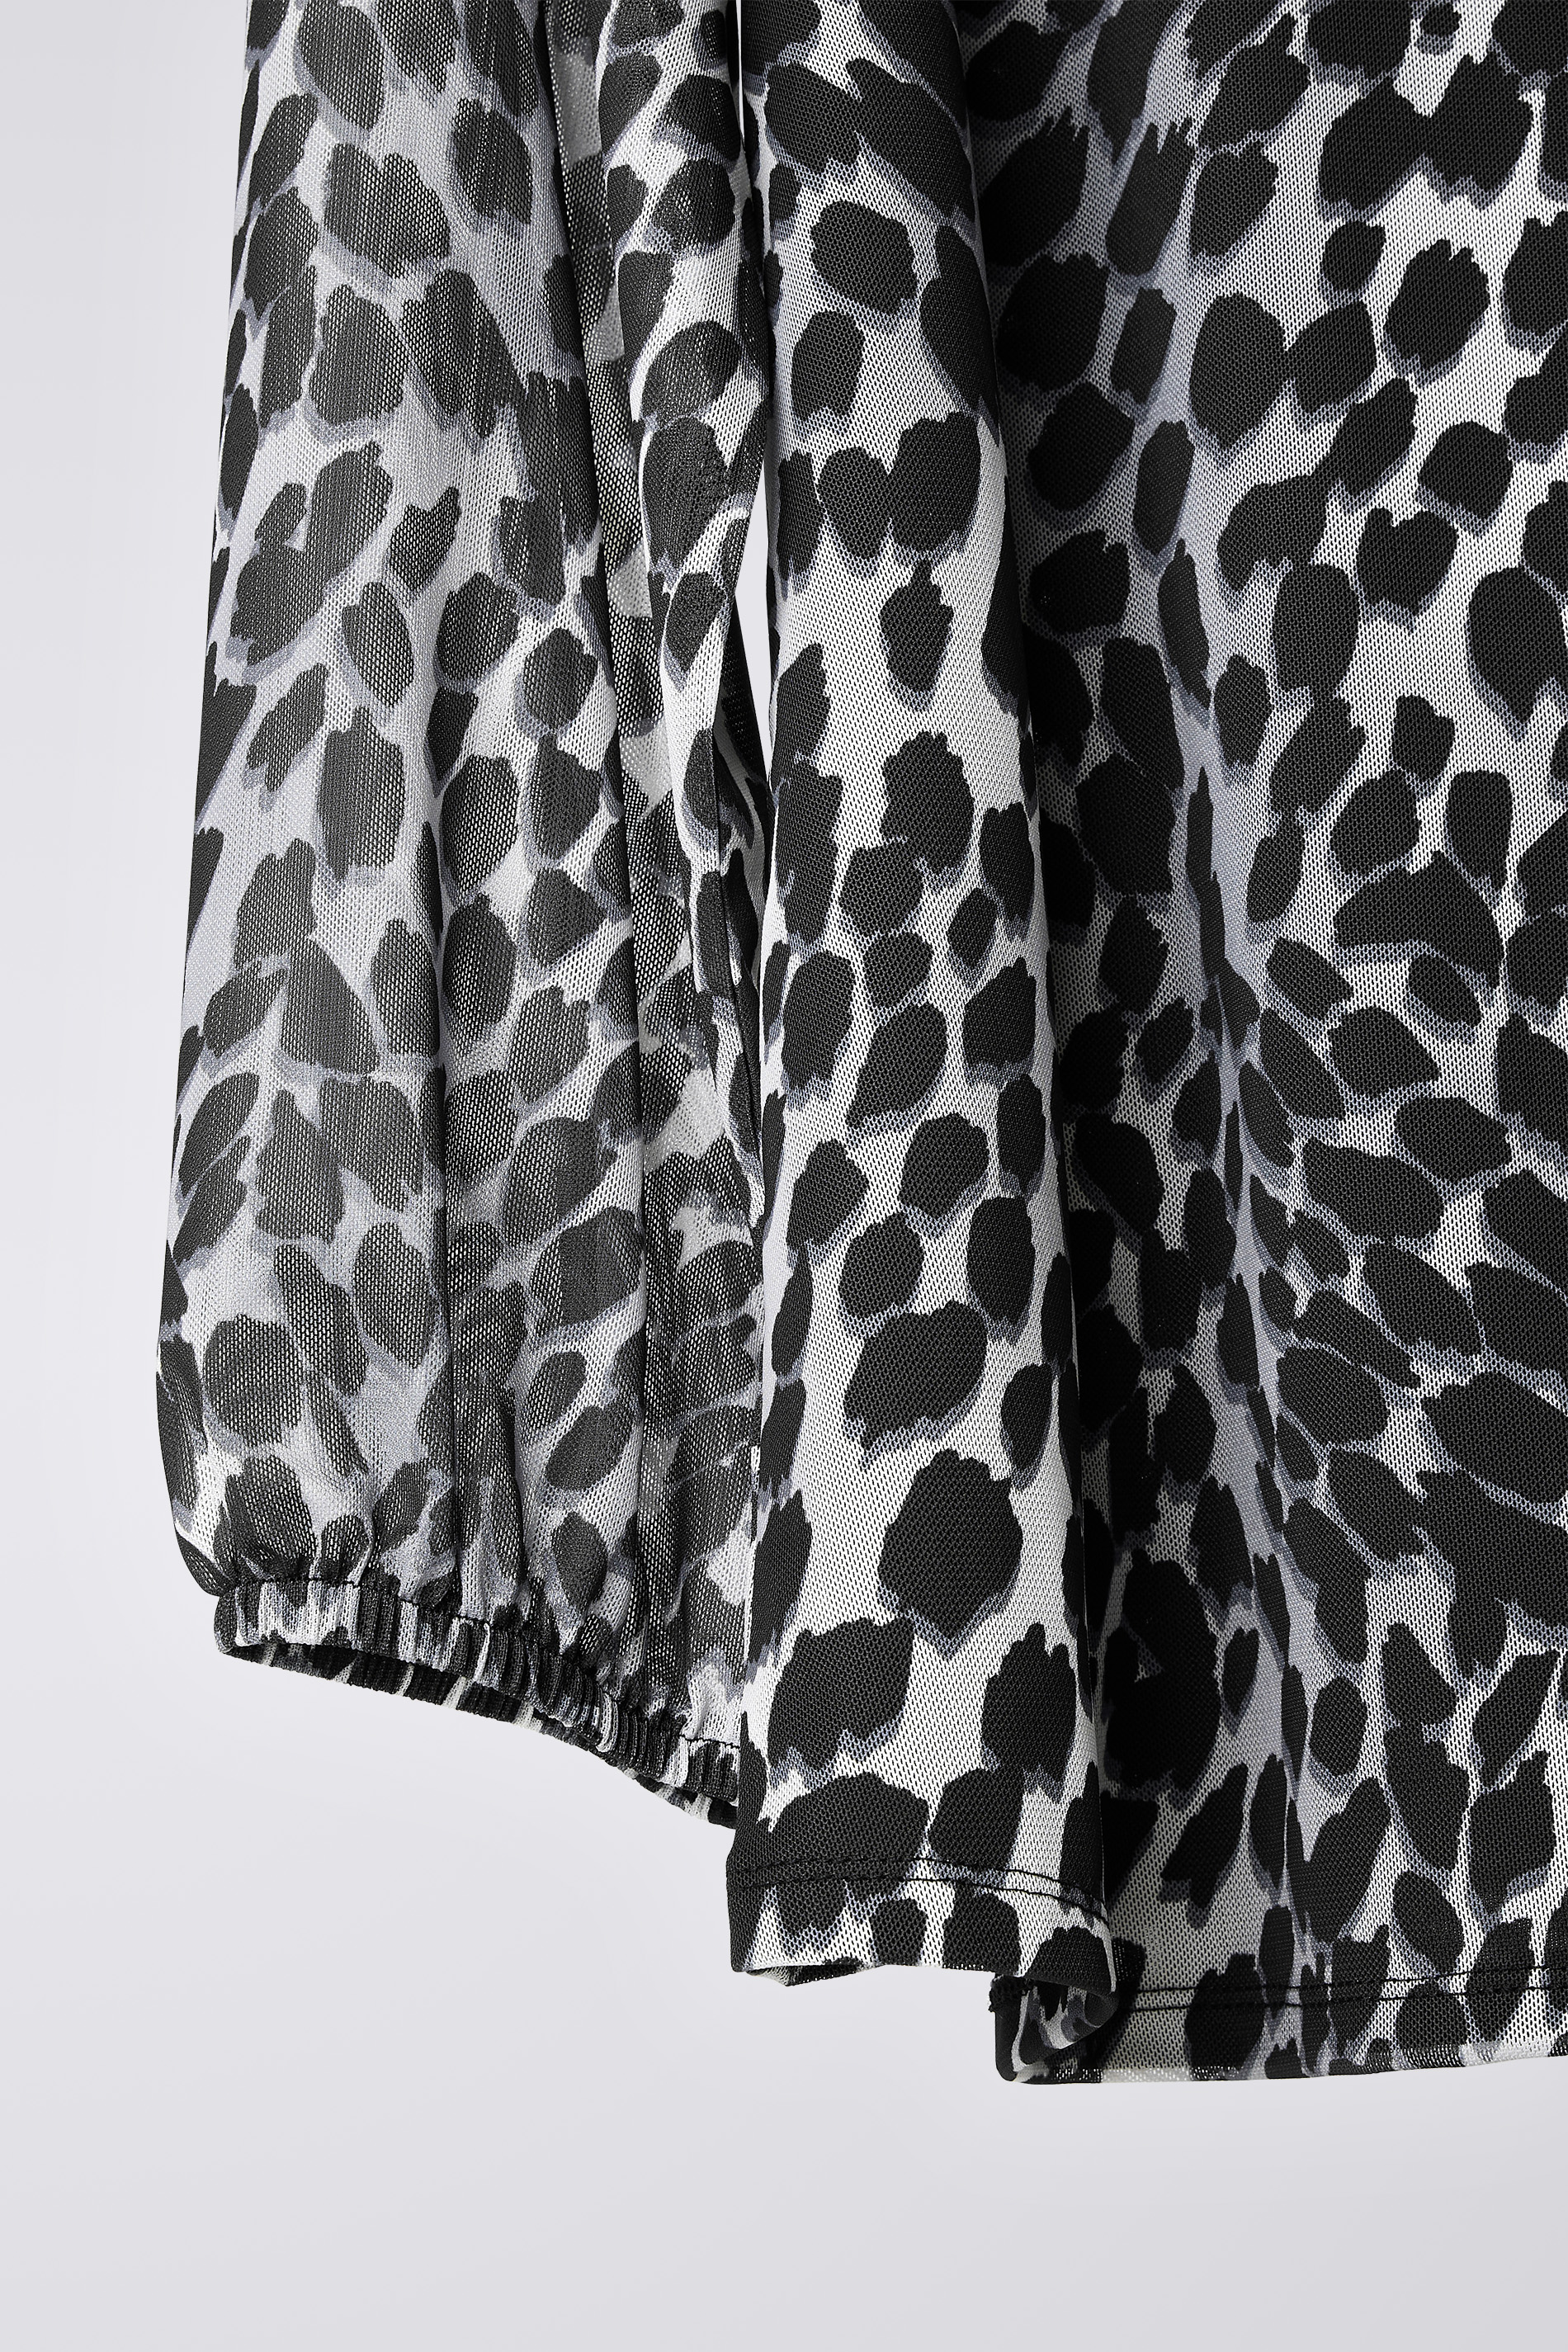 EVANS Plus Size Grey Leopard Print Mesh Top